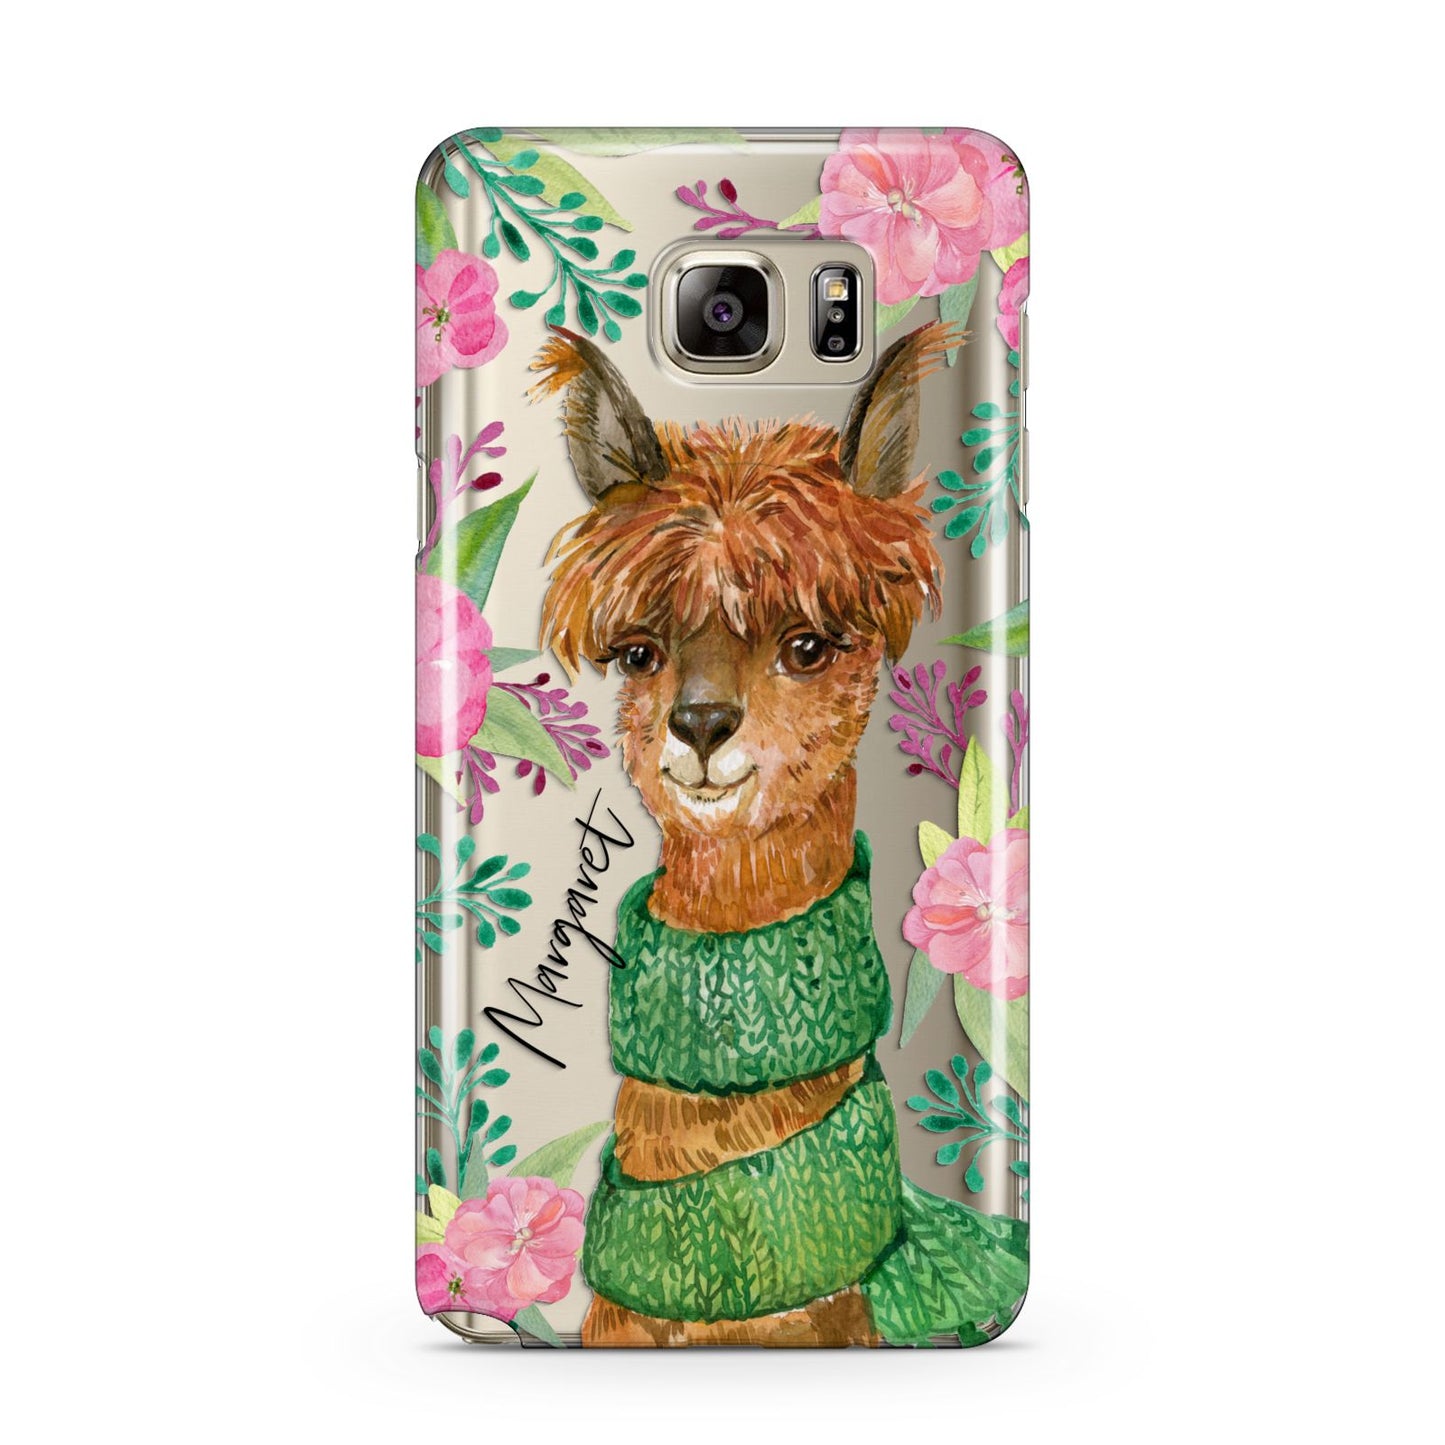 Personalised Alpaca Samsung Galaxy Note 5 Case